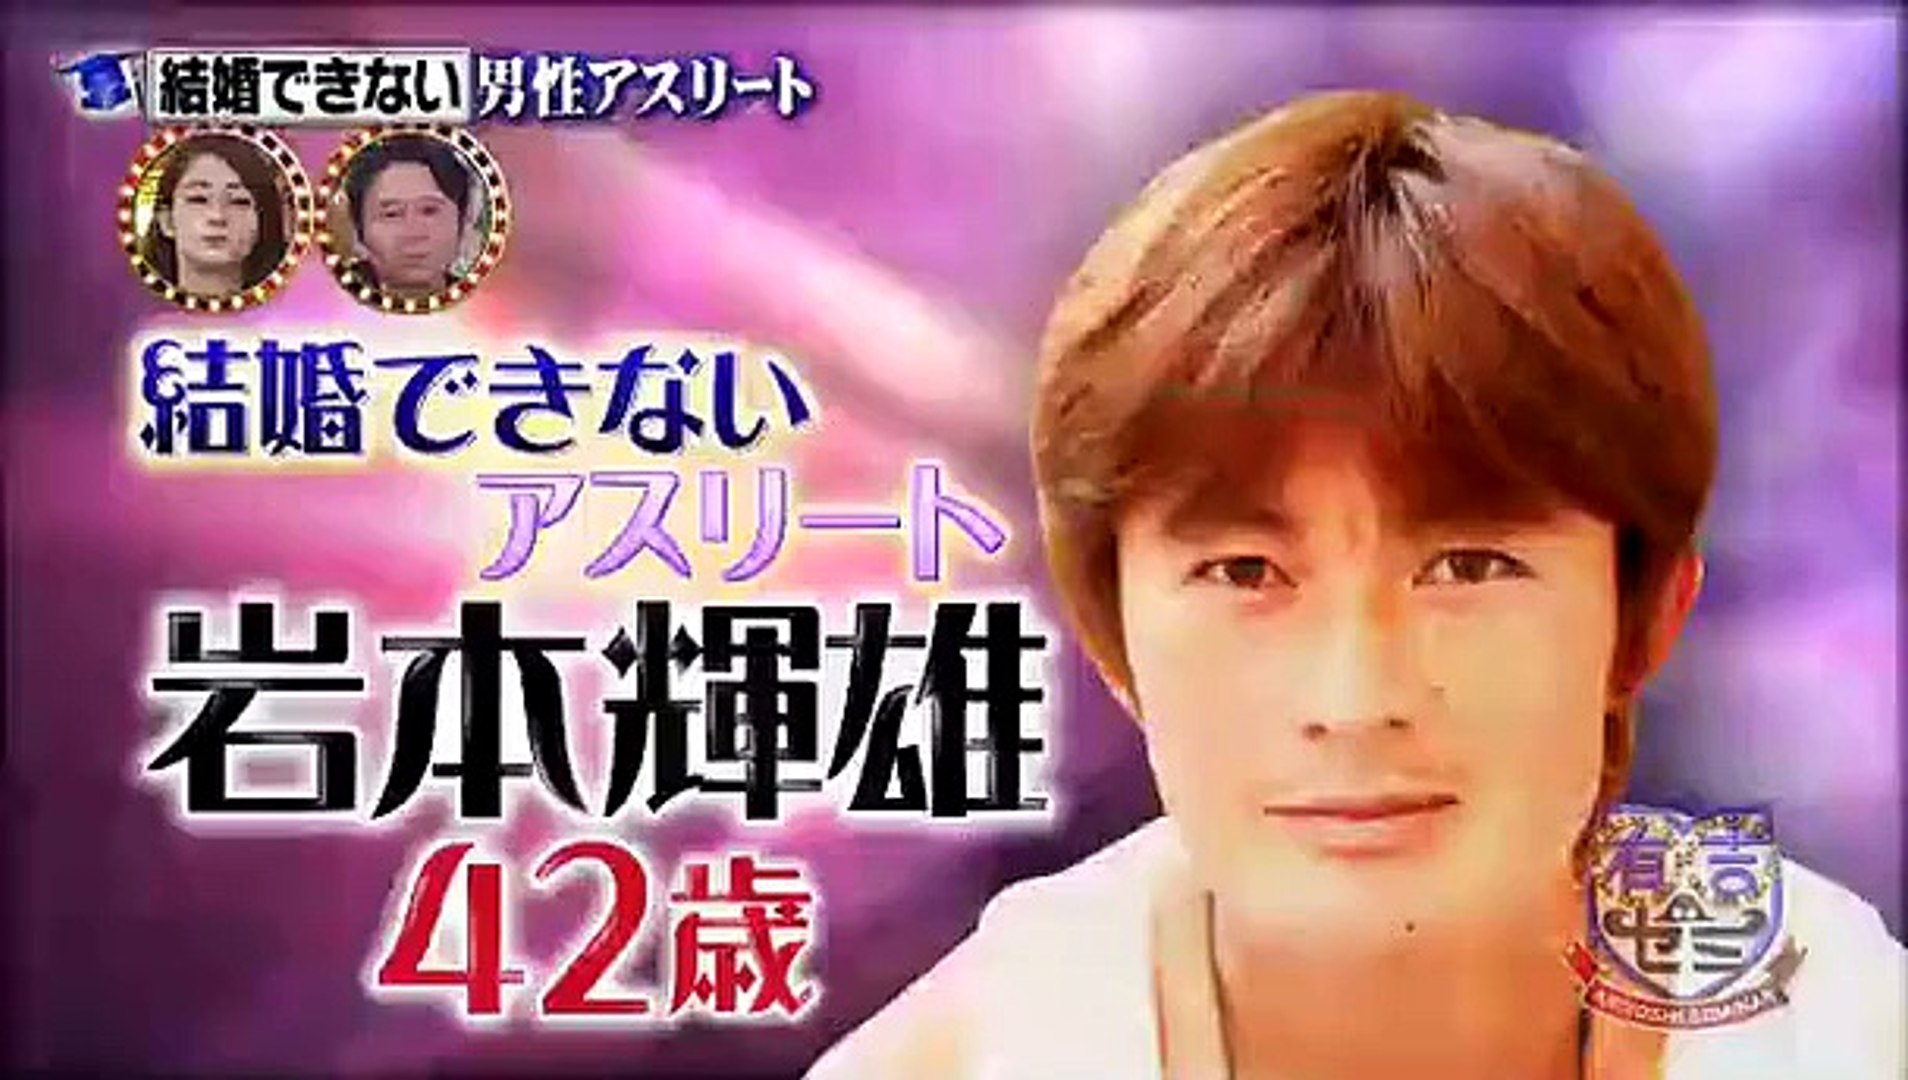 岩本輝雄 Iwamoto Teruo Former Japan National Soccer Player Now Big Fan Of Akb48 Video Dailymotion